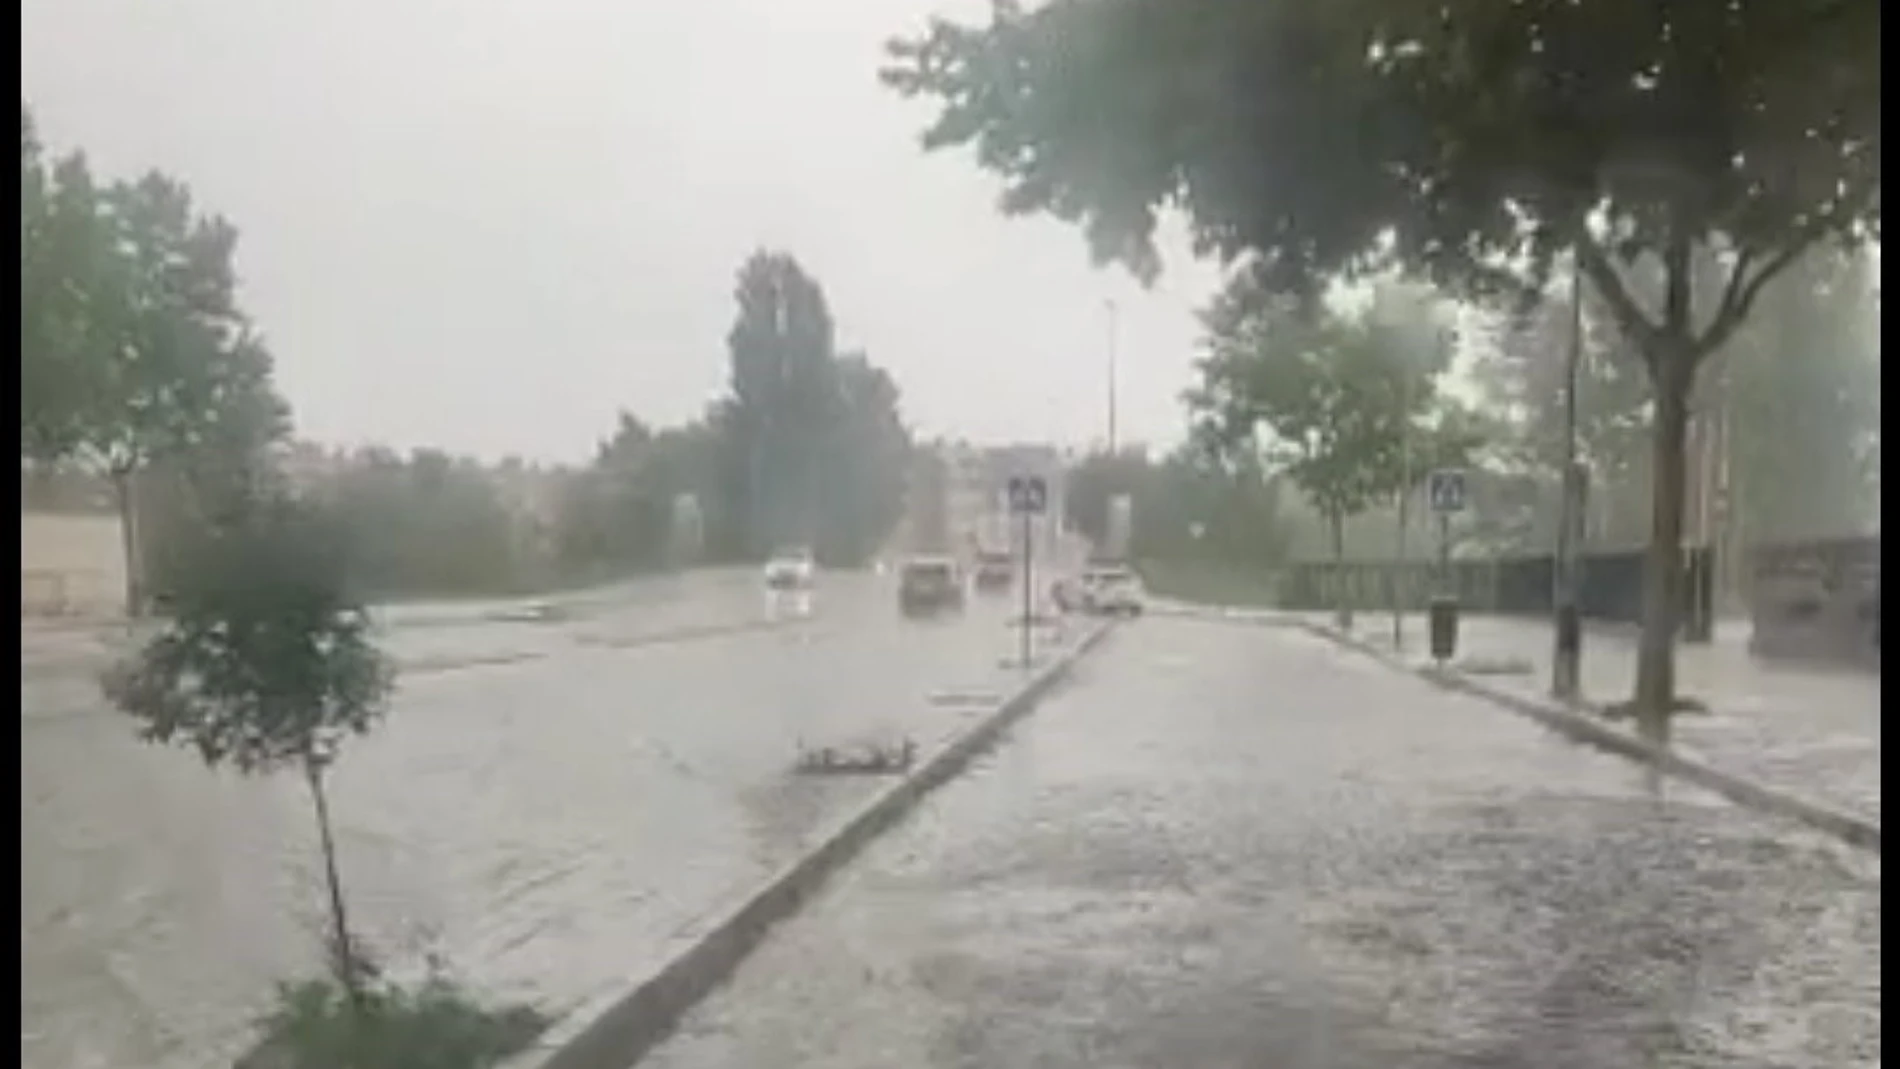 Inundaciones y balsas de agua en varios puntos de Ávila capital esta semana